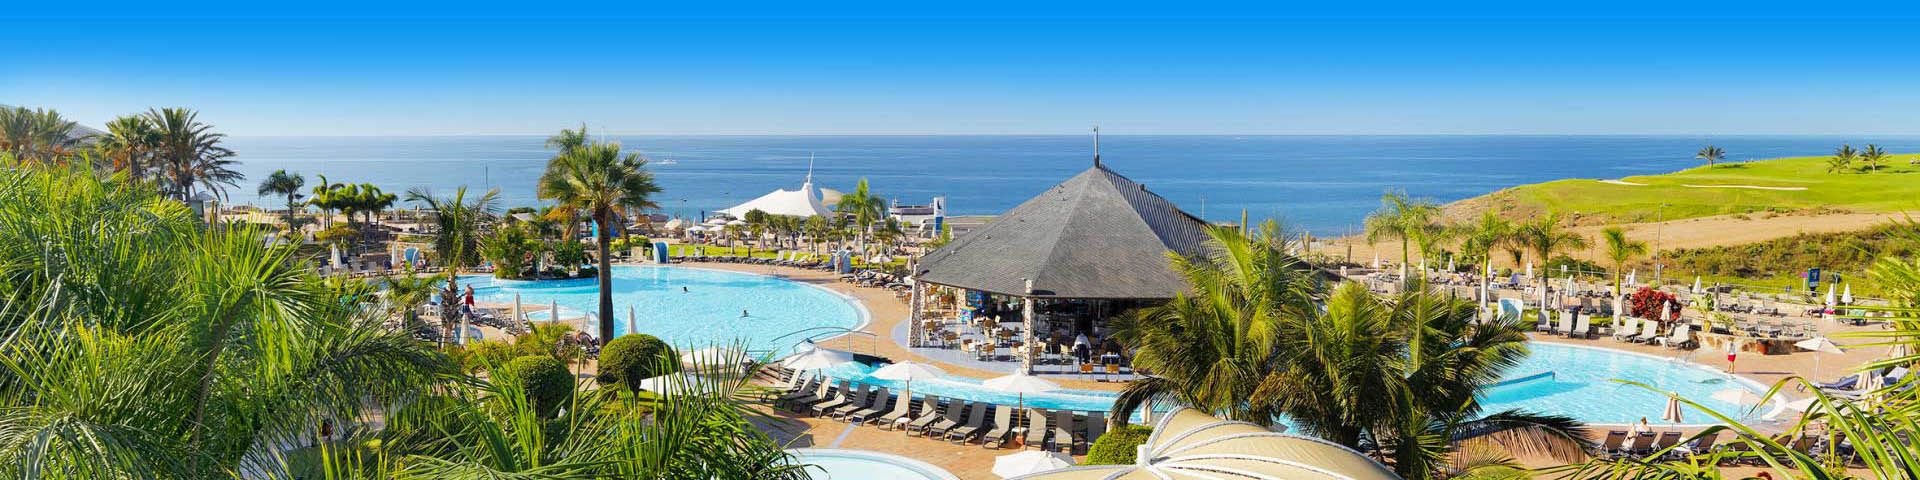 Uitzicht vanaf een hotel op Gran Canaria over de zee en het zwembad